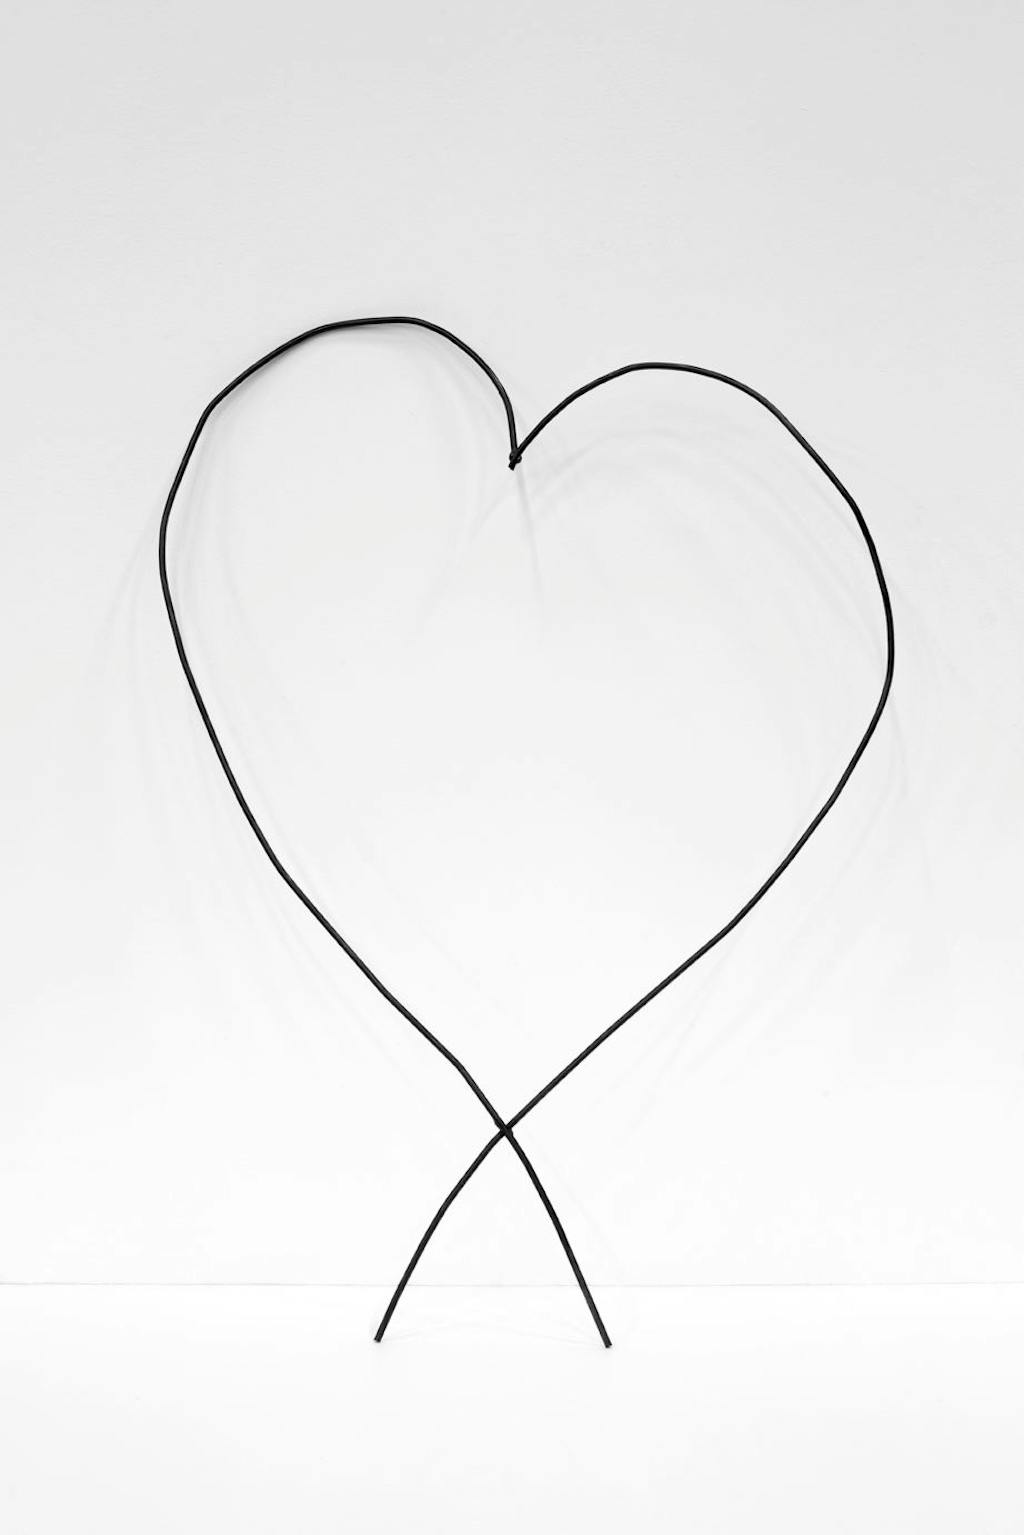 Abetare (Heart) - © Mennour